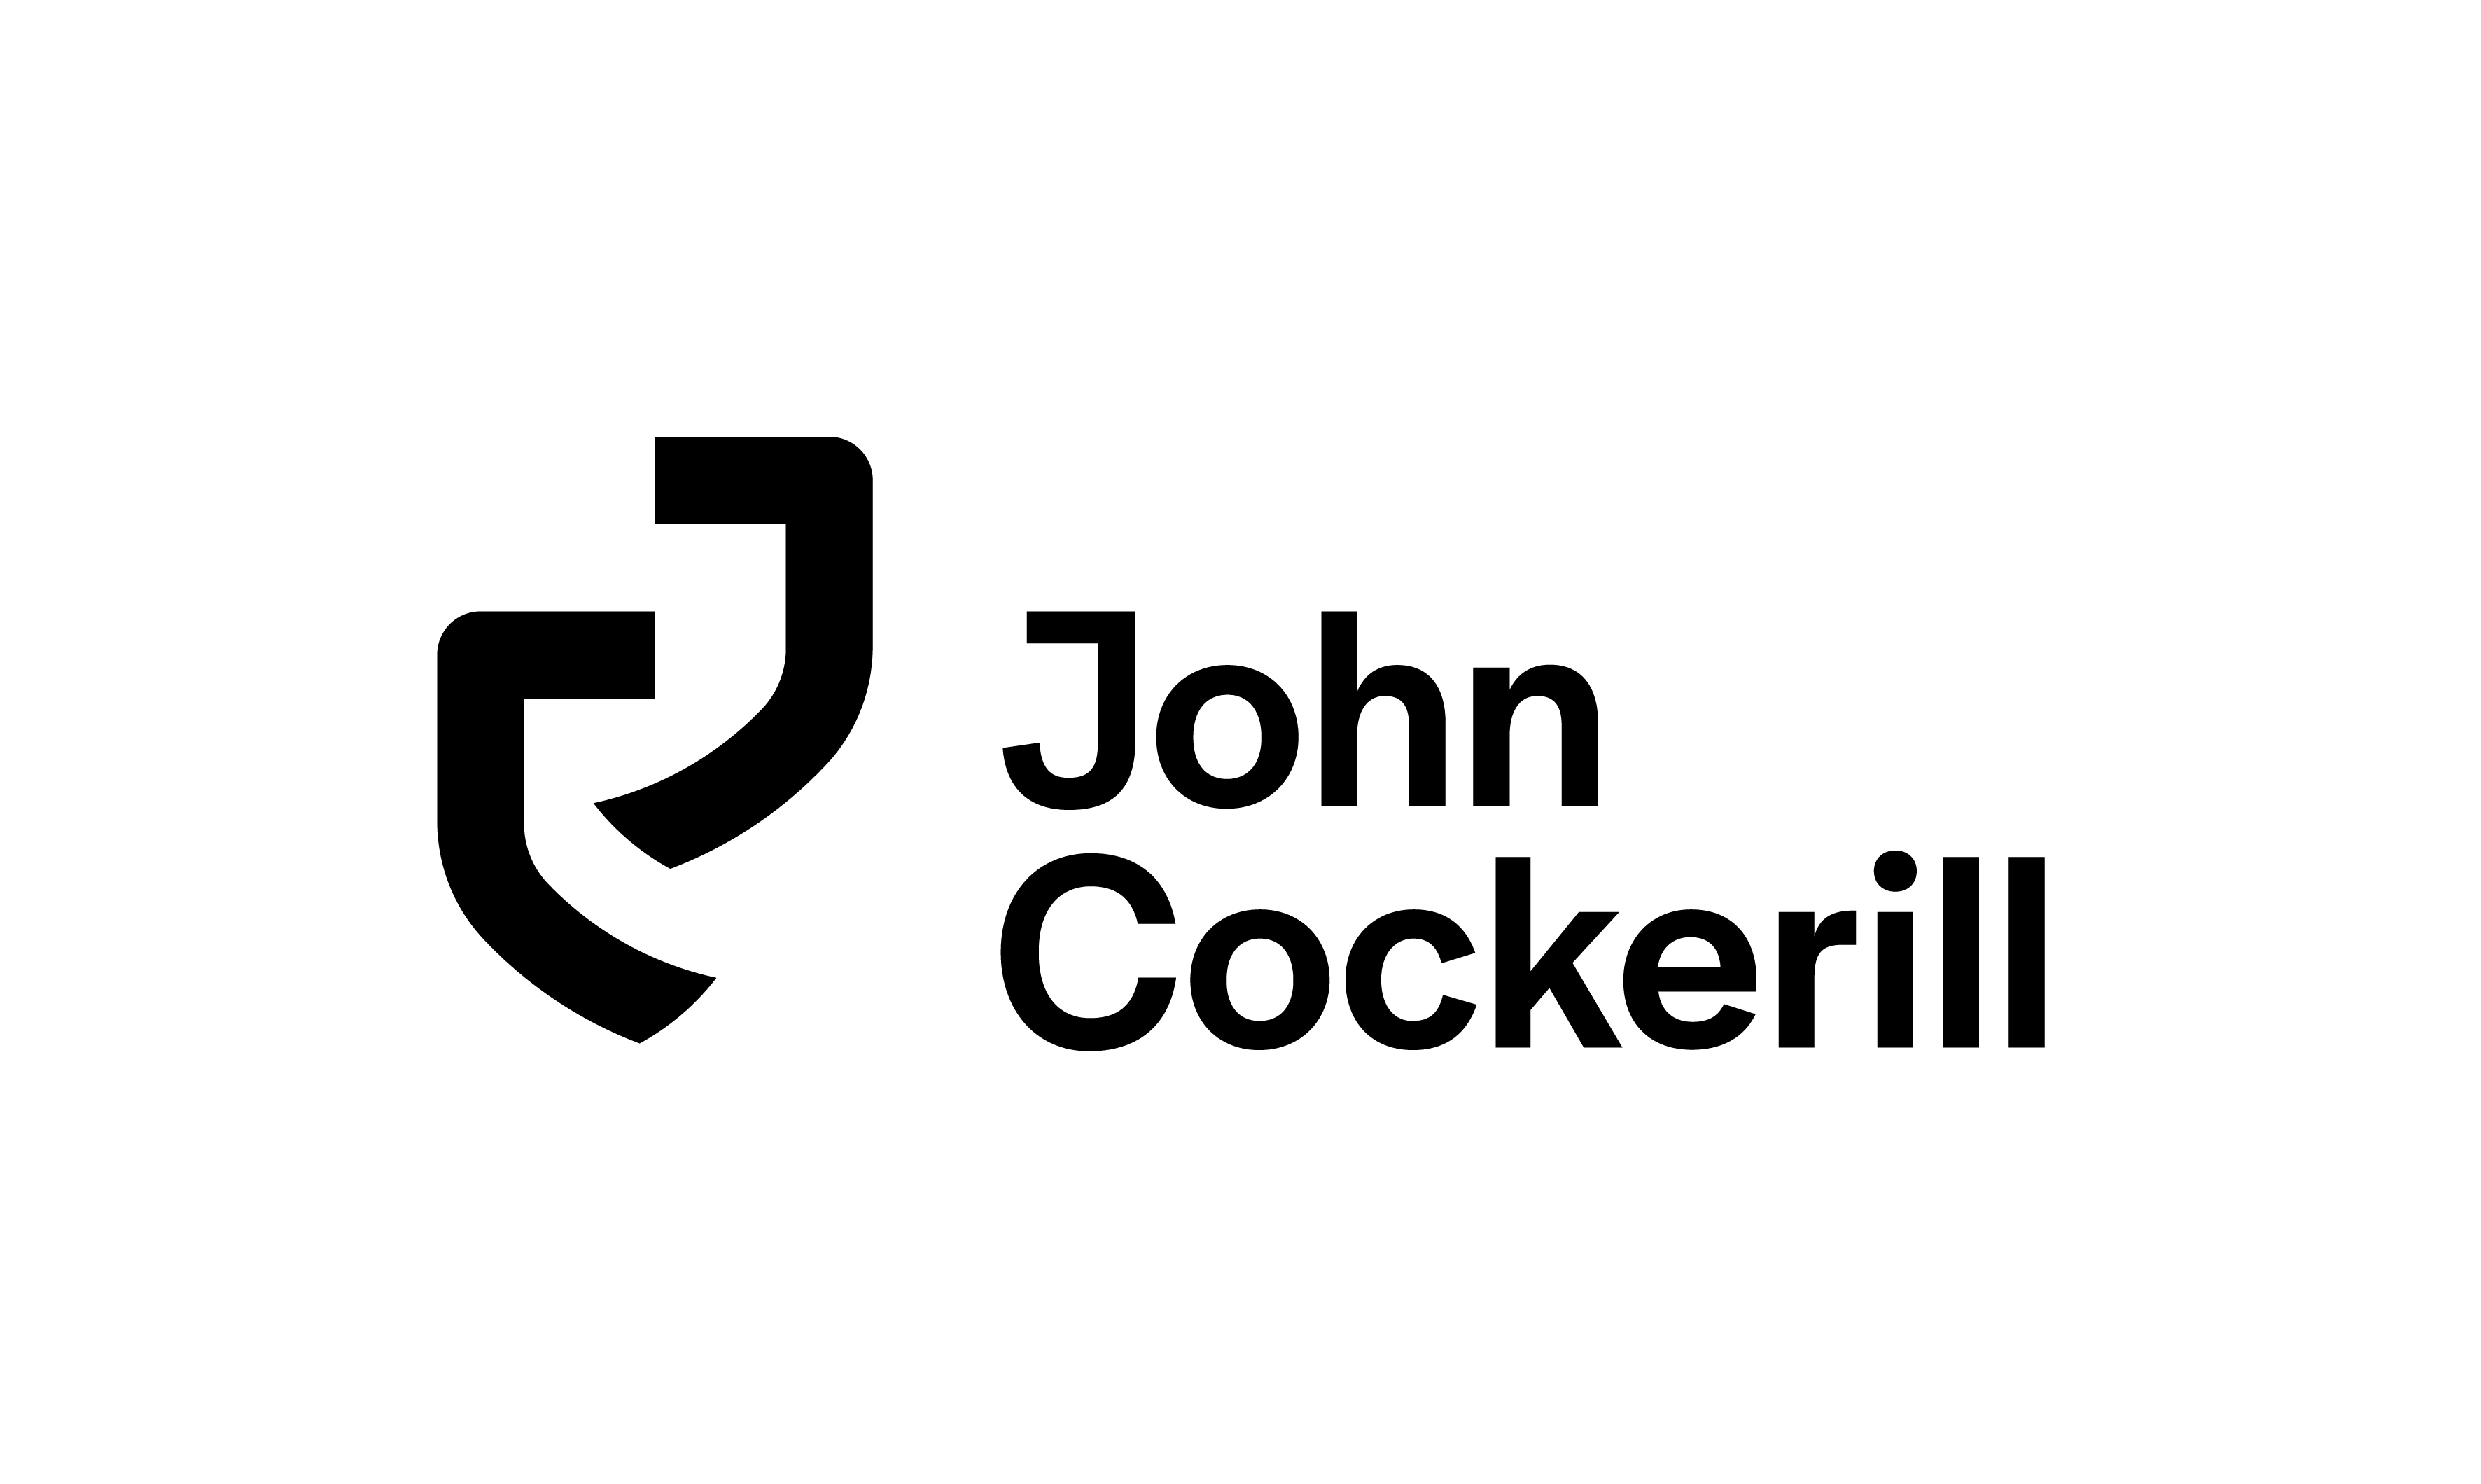 John cockerill